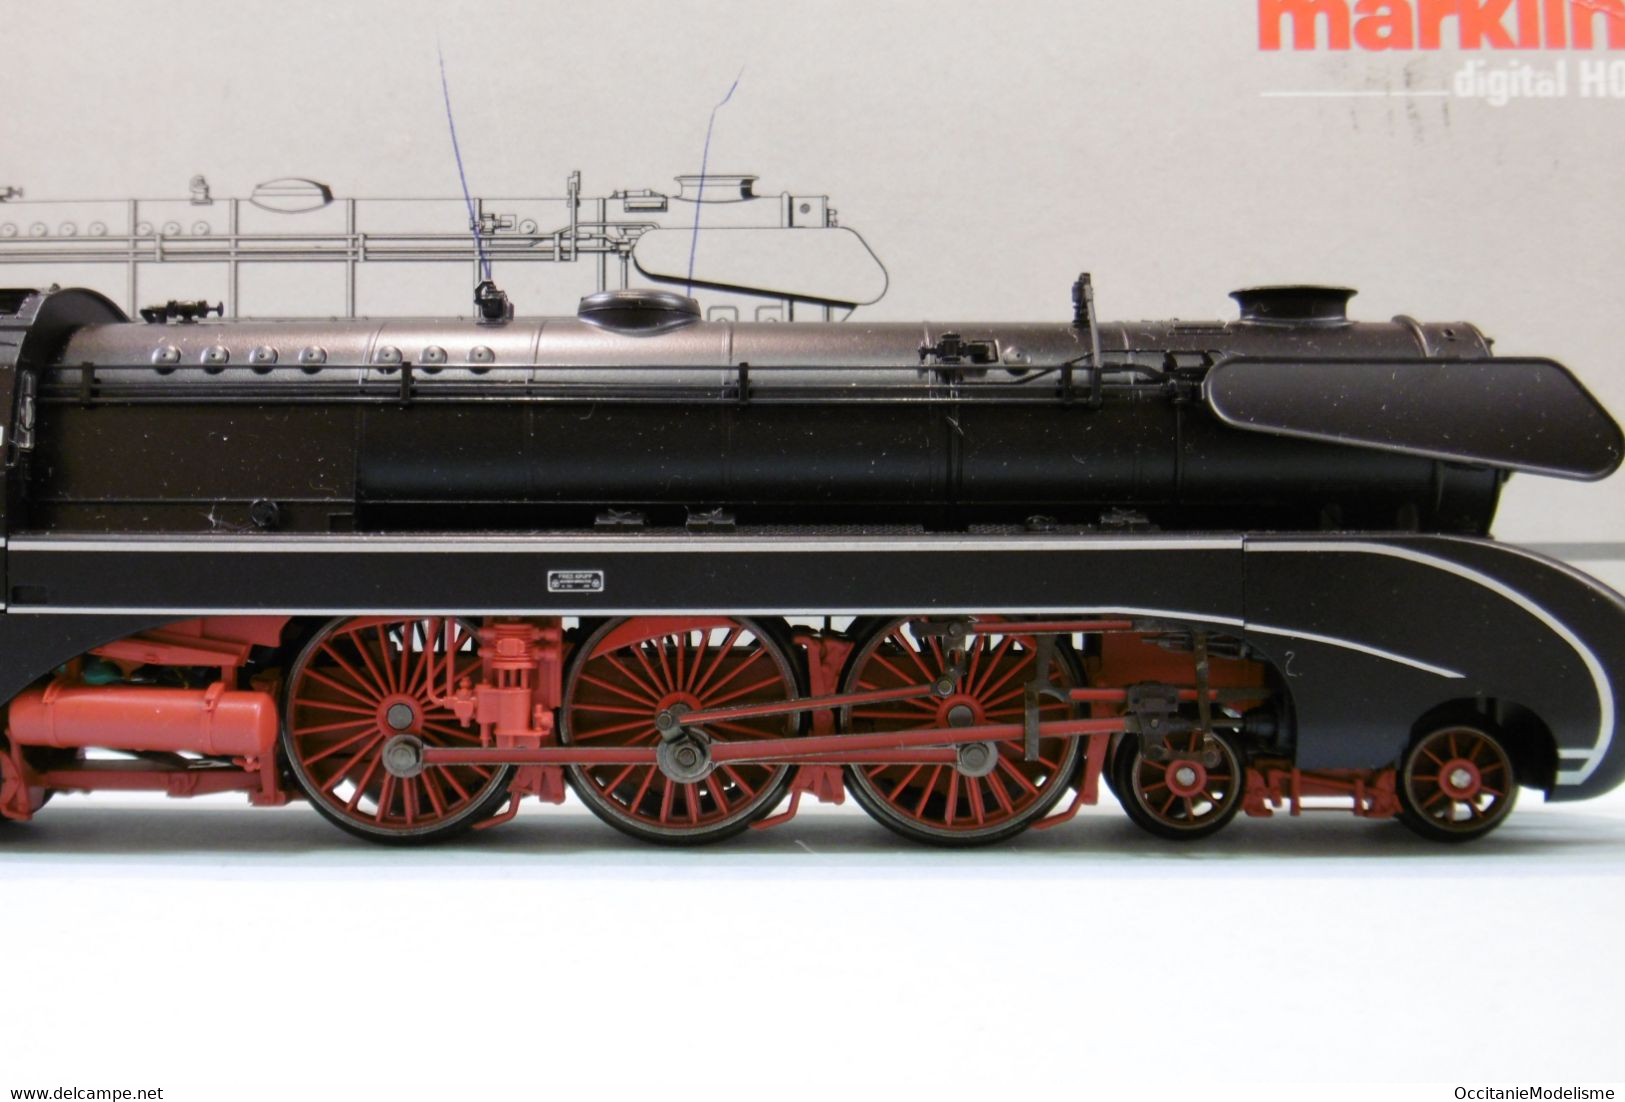 Märklin 3 Rails - Locomotive Vapeur BR 10 001 DB ép. III Delta Digital Sound Réf. 37080 BO HO 1/87 - Locomotives